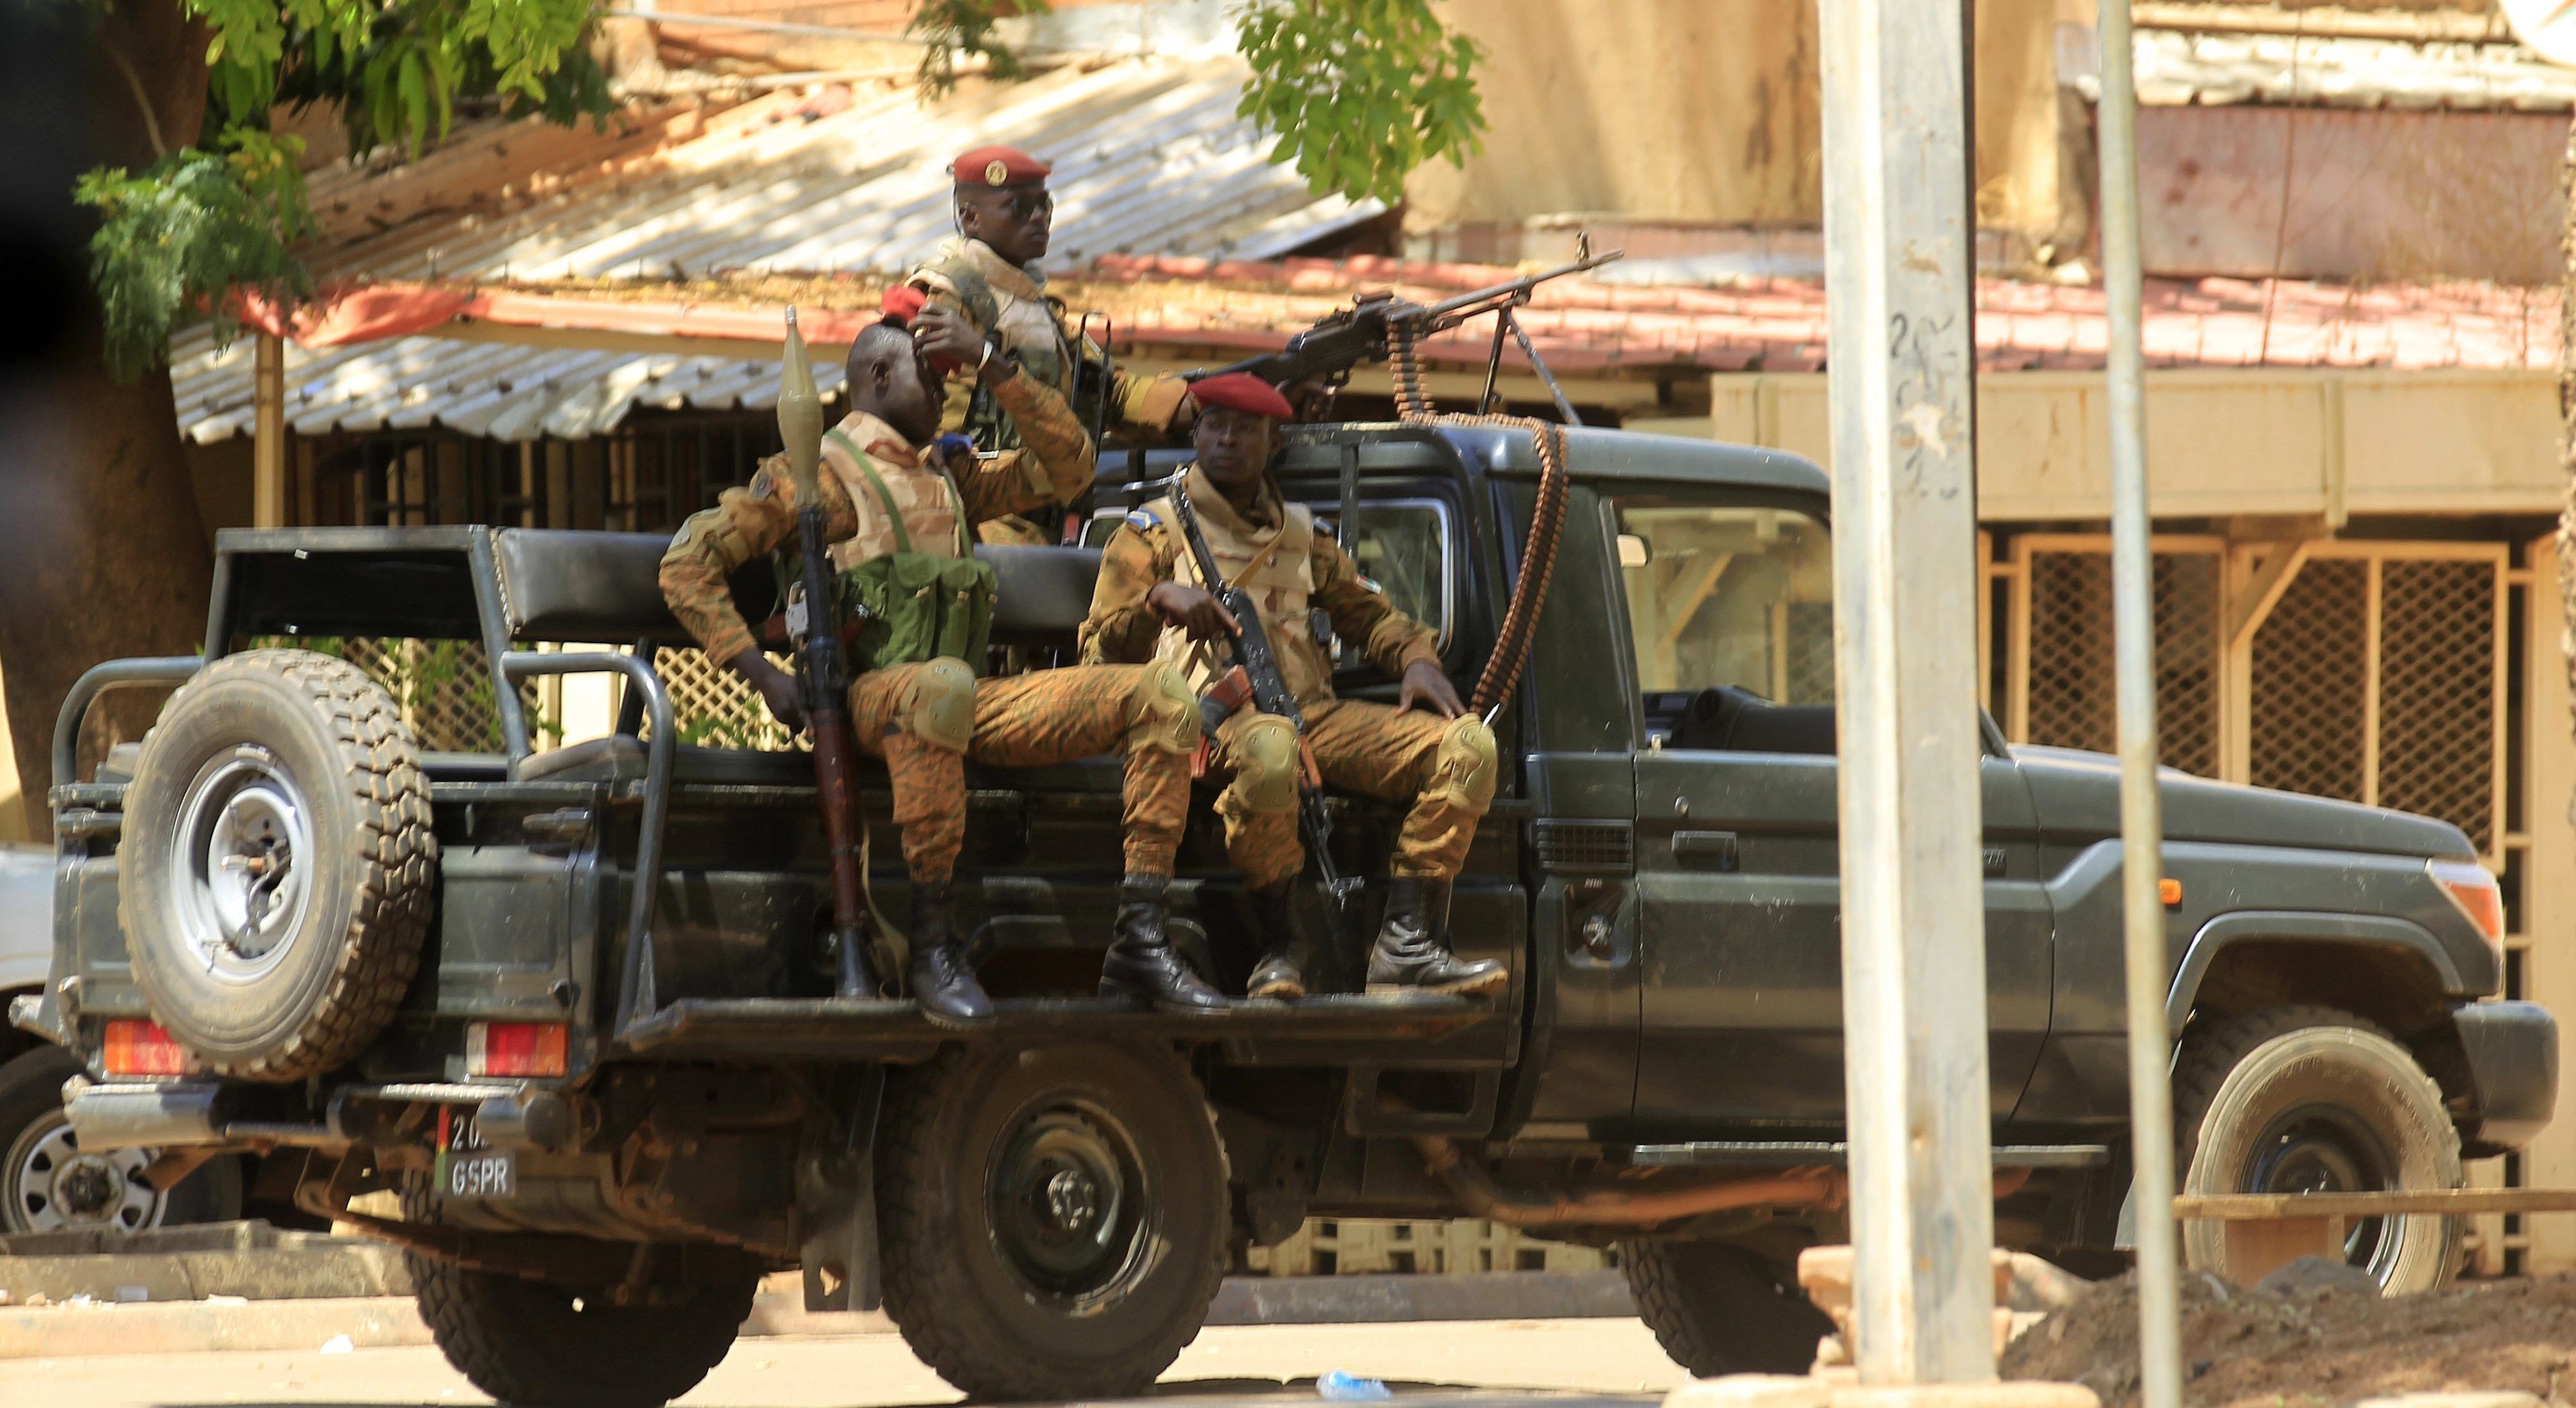 Több tucatnyi halott maradt a motoros dzsihadisták támadása után Burkina Fasóban